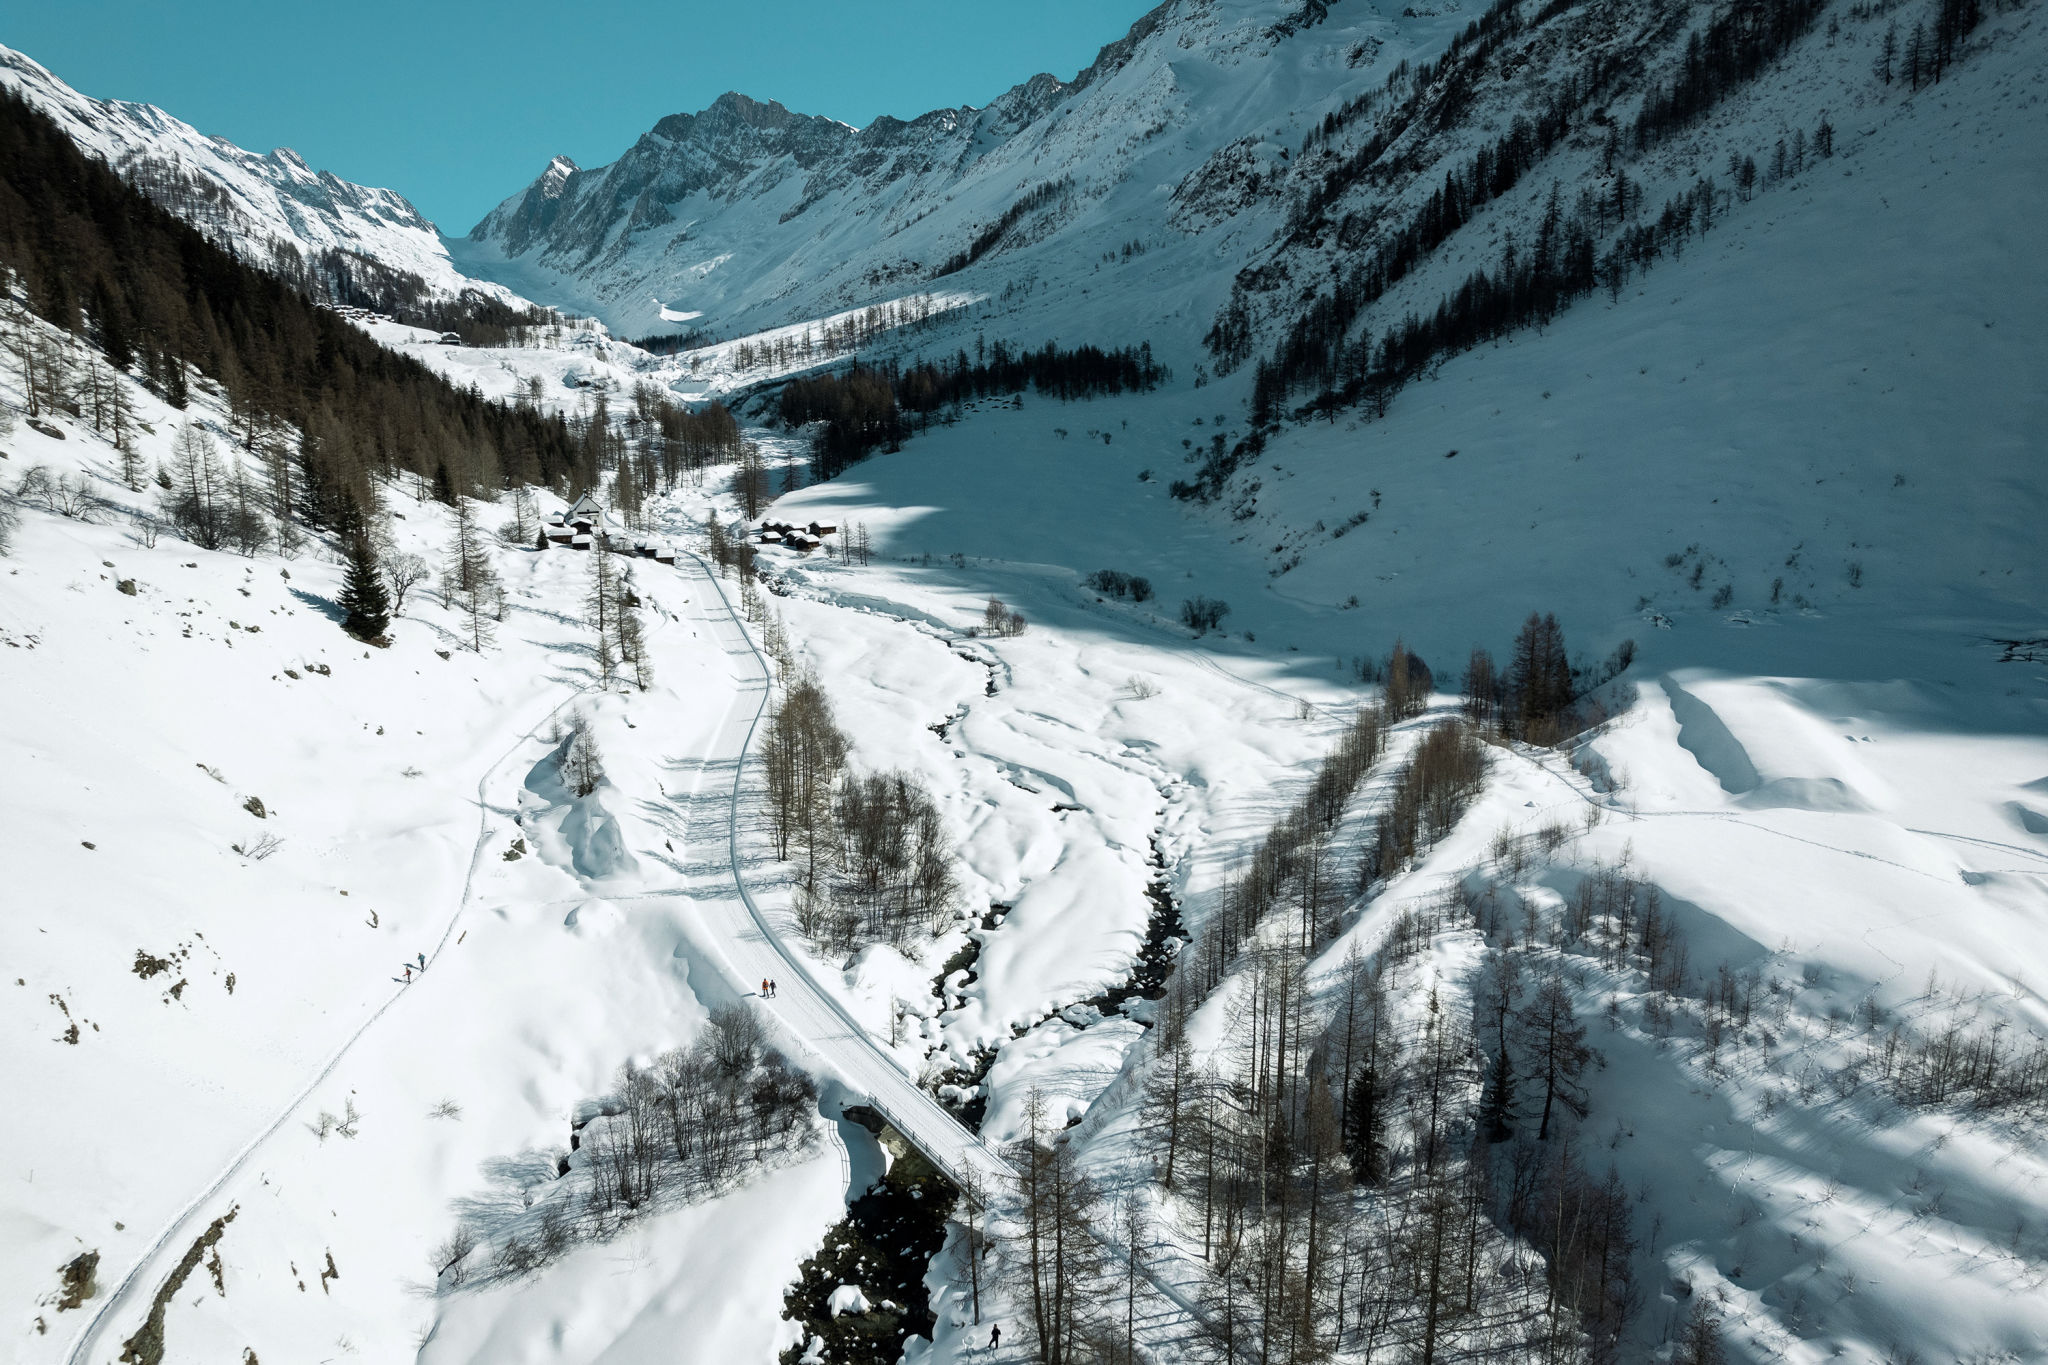 Le sentier de randonnée hivernale vers la Fafleralp. Valais, Suisse